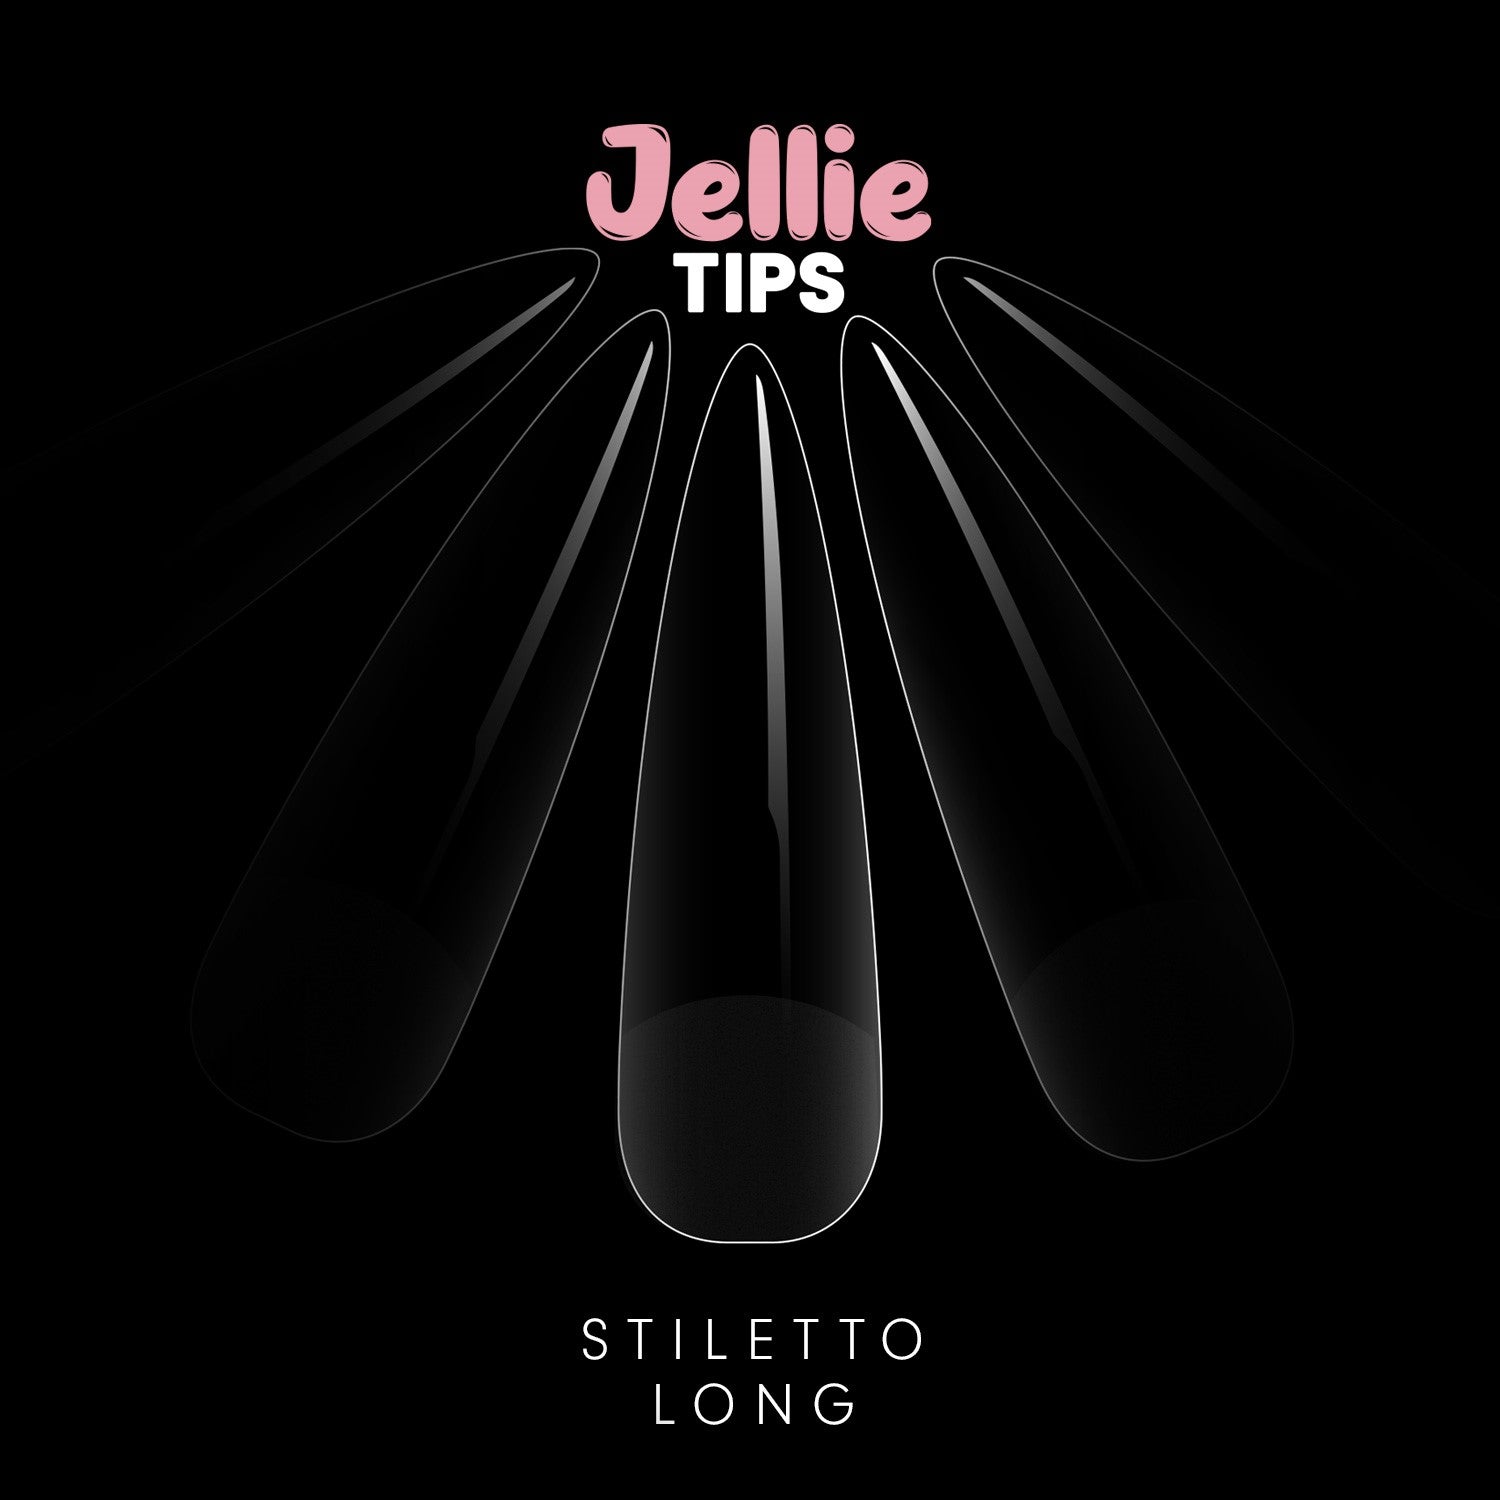 Halo Jellie Nail Tips Stiletto Long, Sizes 0-11, 480 Mixed Sizes